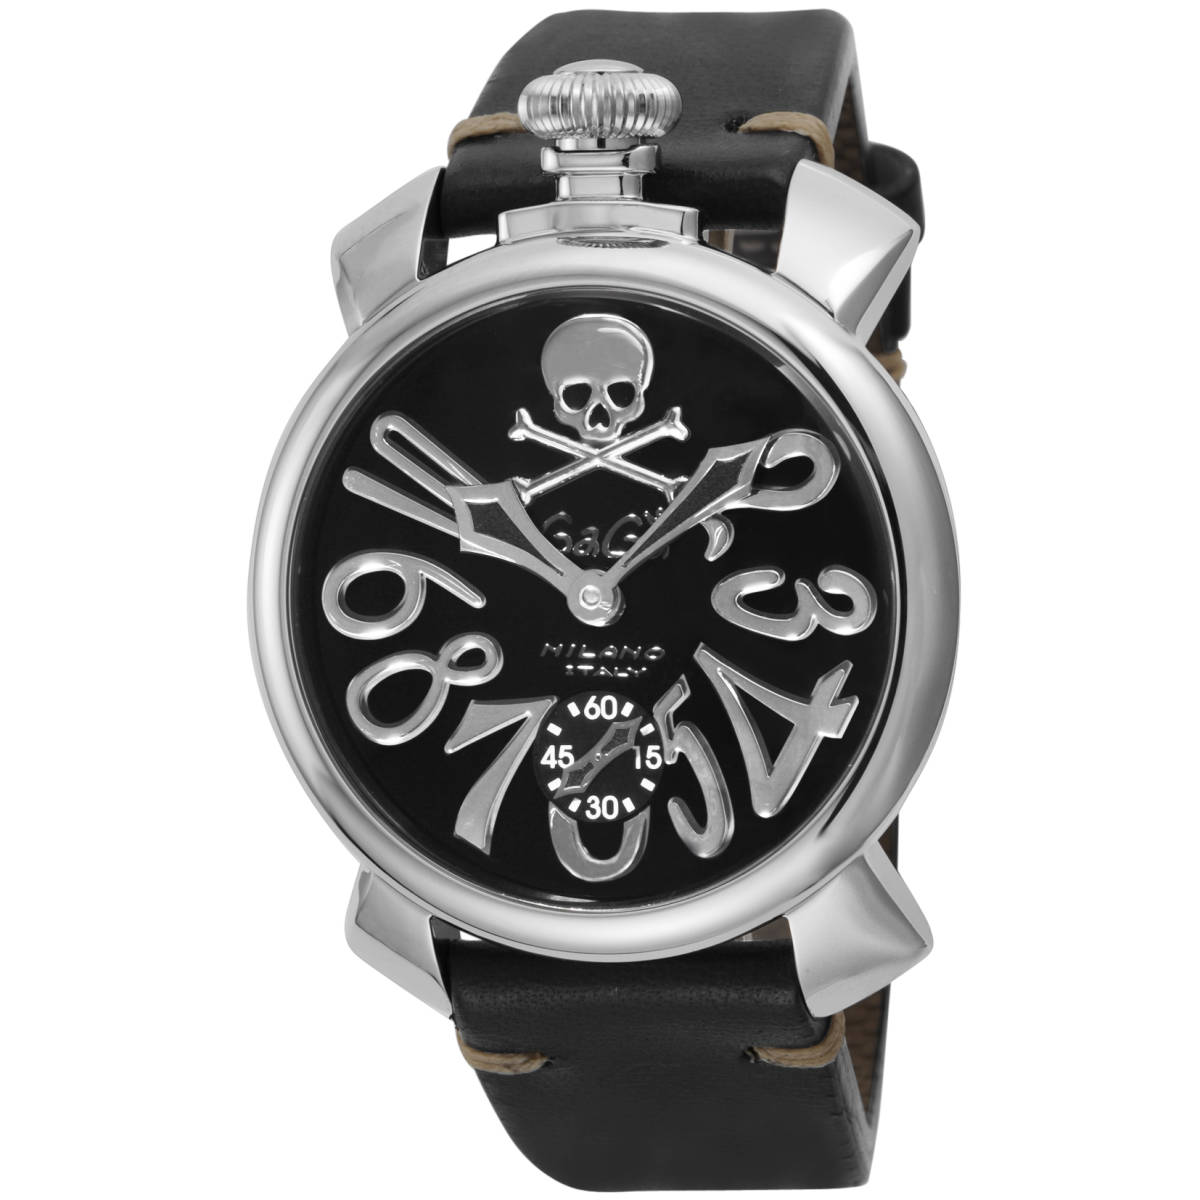 ◆GaGa MILANO ガガミラノ◆ 腕時計 時計 手巻き メンズ アウトレット 機械式 ブラック 5010ART02S-BLK マヌアーレ48MM アートコレクション